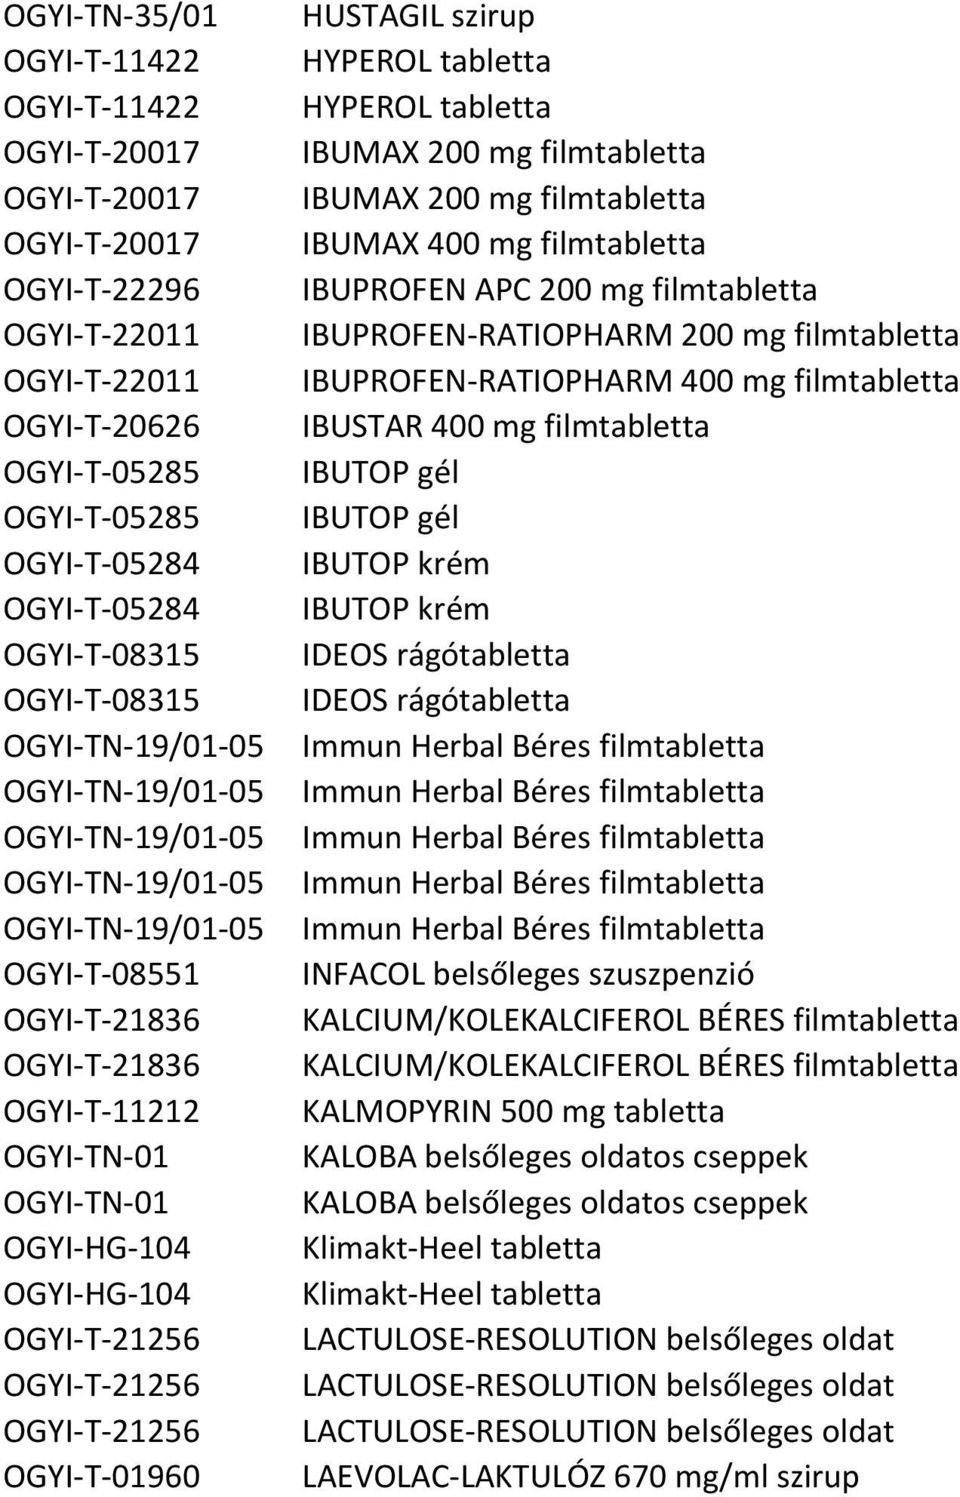 OGYI-T-21256 OGYI-T-21256 OGYI-T-21256 OGYI-T-01960 HUSTAGIL szirup HYPEROL tabletta HYPEROL tabletta IBUMAX 200 mg filmtabletta IBUMAX 200 mg filmtabletta IBUMAX 400 mg filmtabletta IBUPROFEN APC